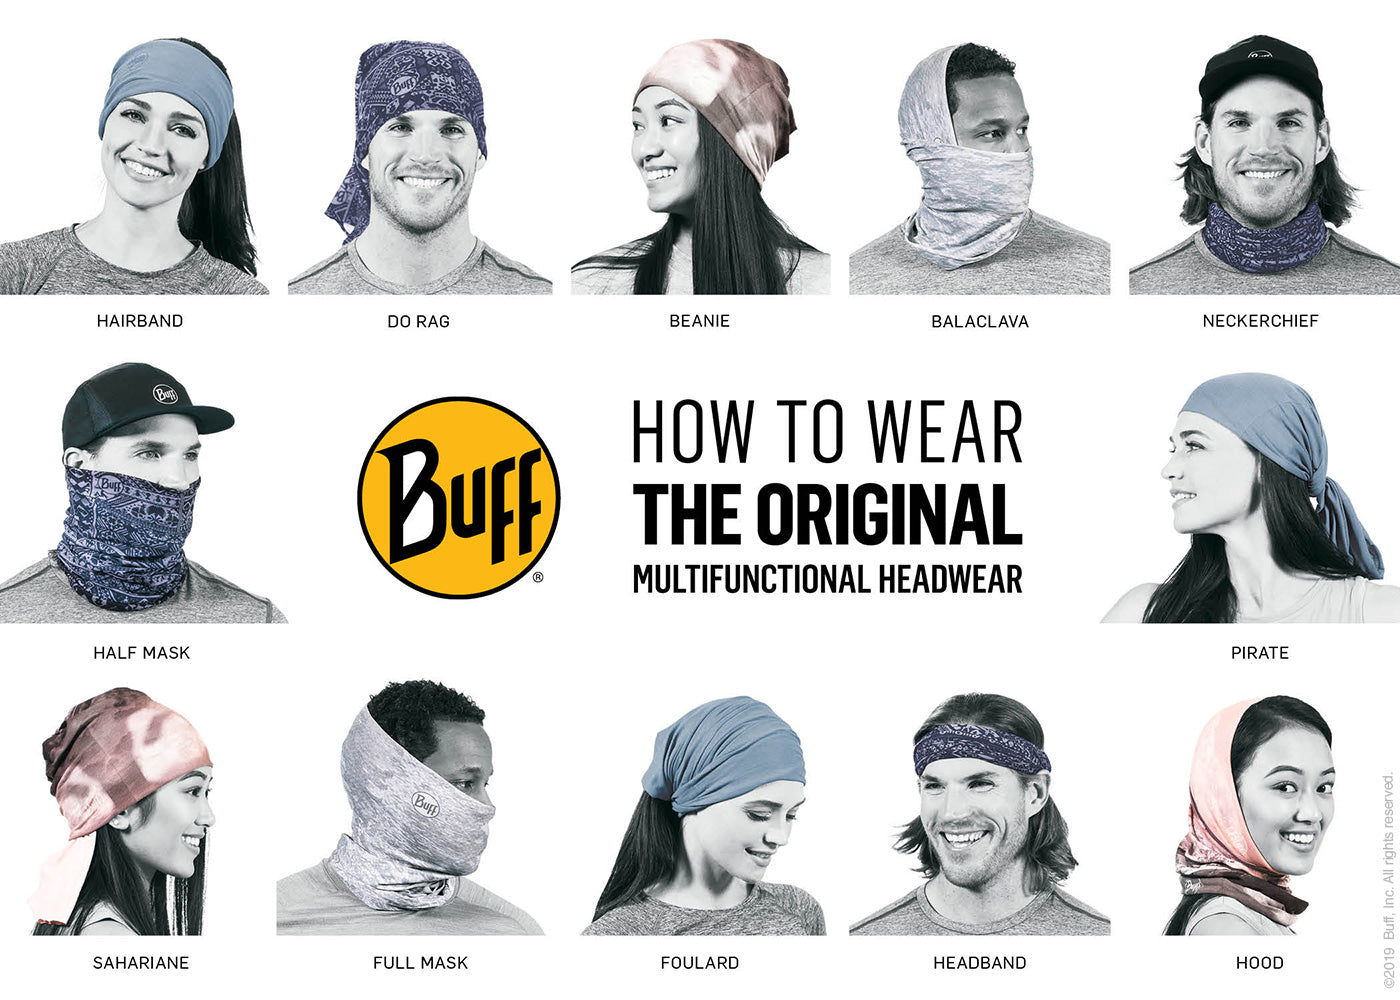 BUFF Multifunctional Headwear